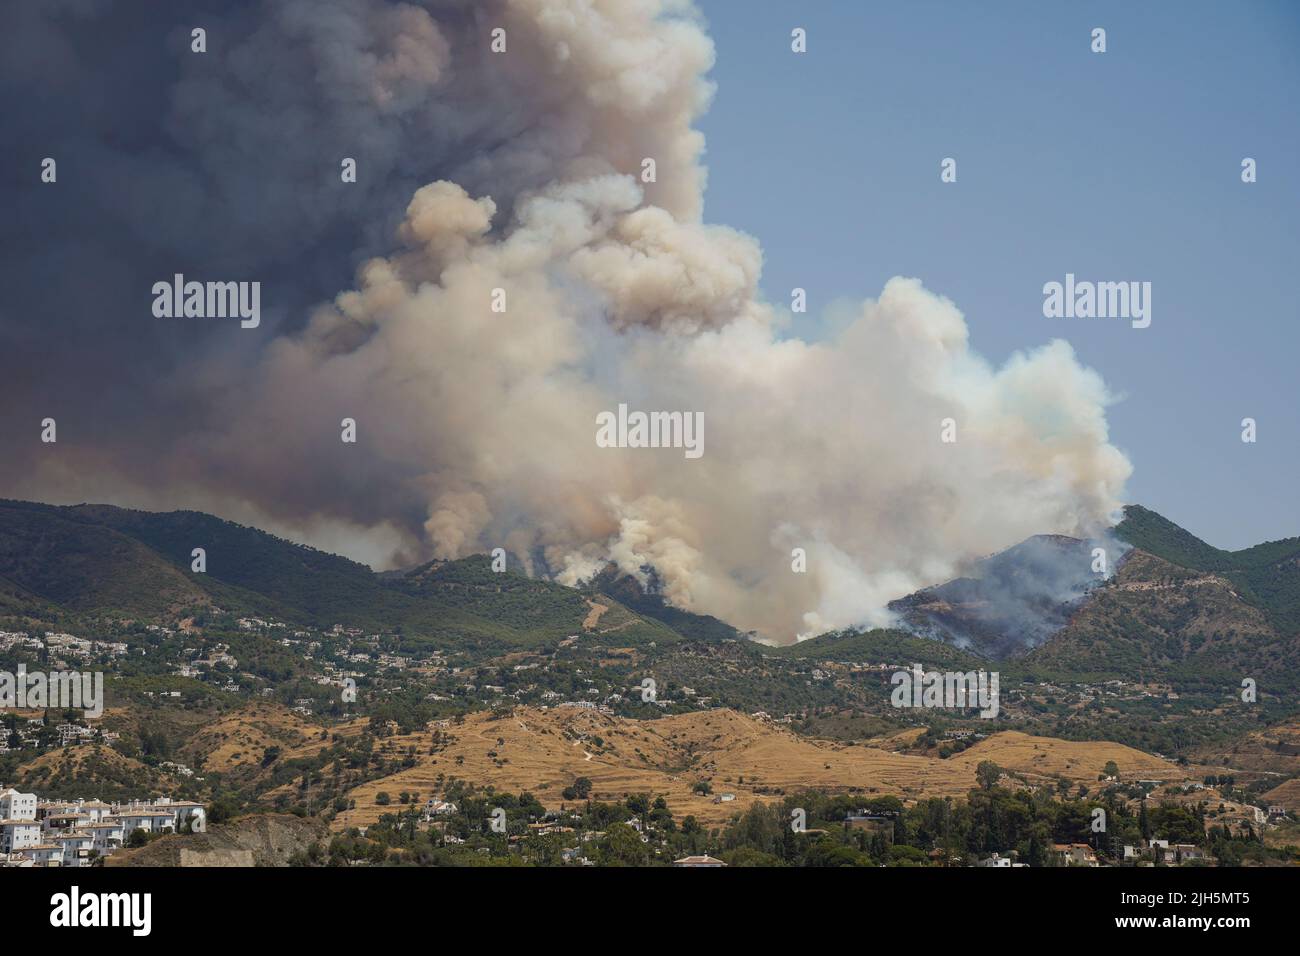 Waldbrand in der Sierra de Mijas kann man beim Waldbrand riesige Rauchsäulen sehen. 18. juli 2022, Mijas, Andalusien, Spanien. Stockfoto